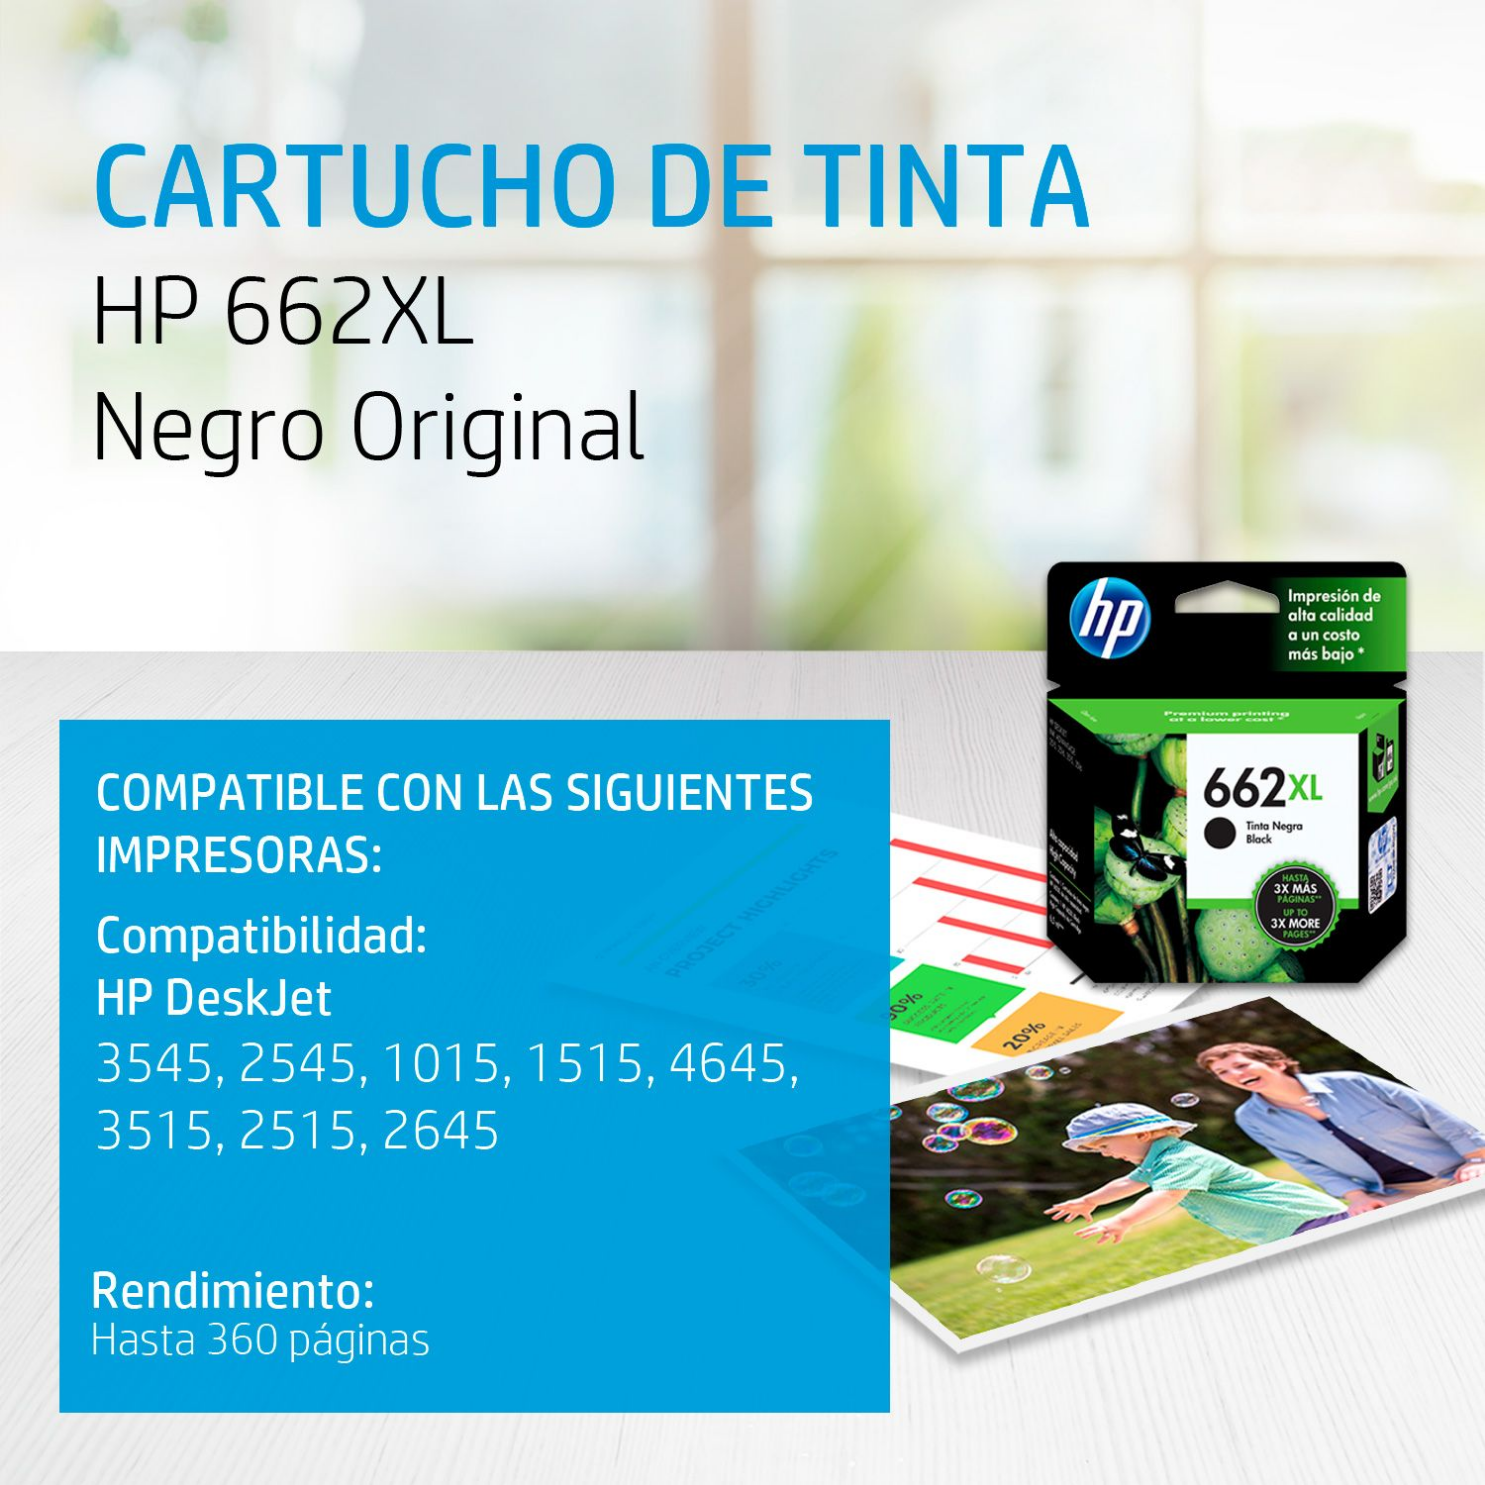 Cartucho de tinta HP 662XL Negro (CZ105AL) DeskJet 2515, 3515, 360 Pag.